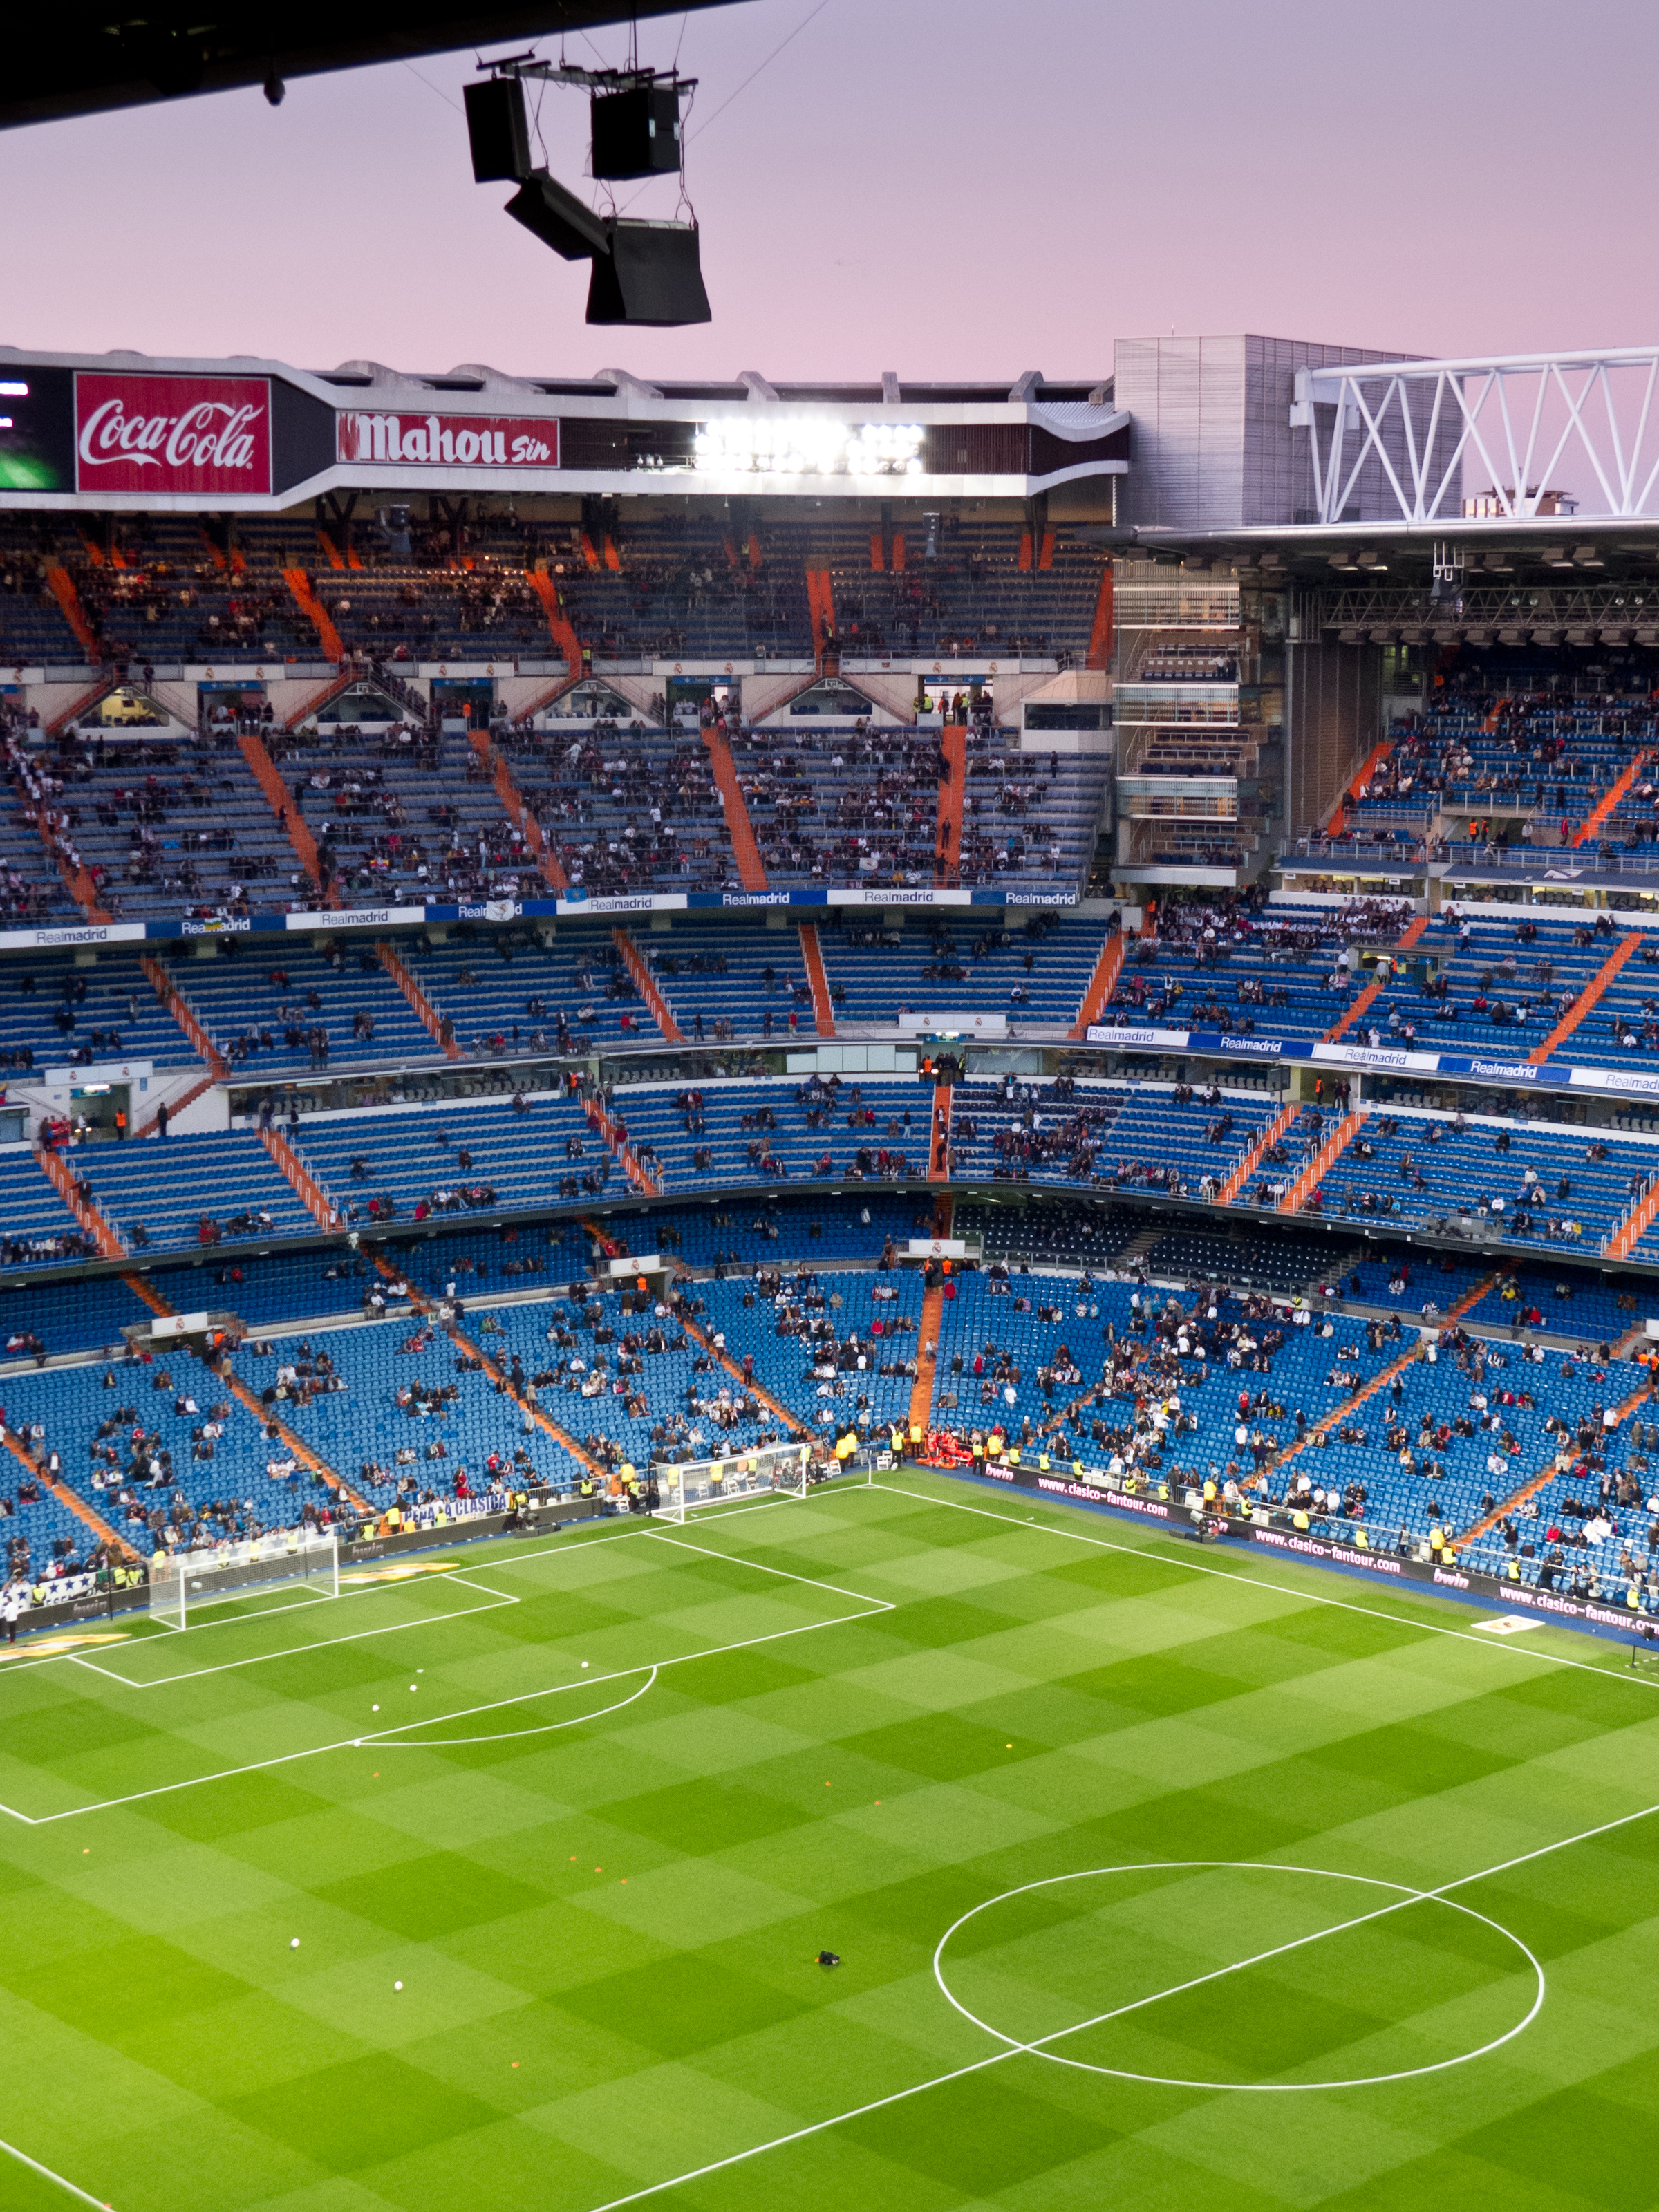 Estadio Santiago Bernabéu, Futbolpedia